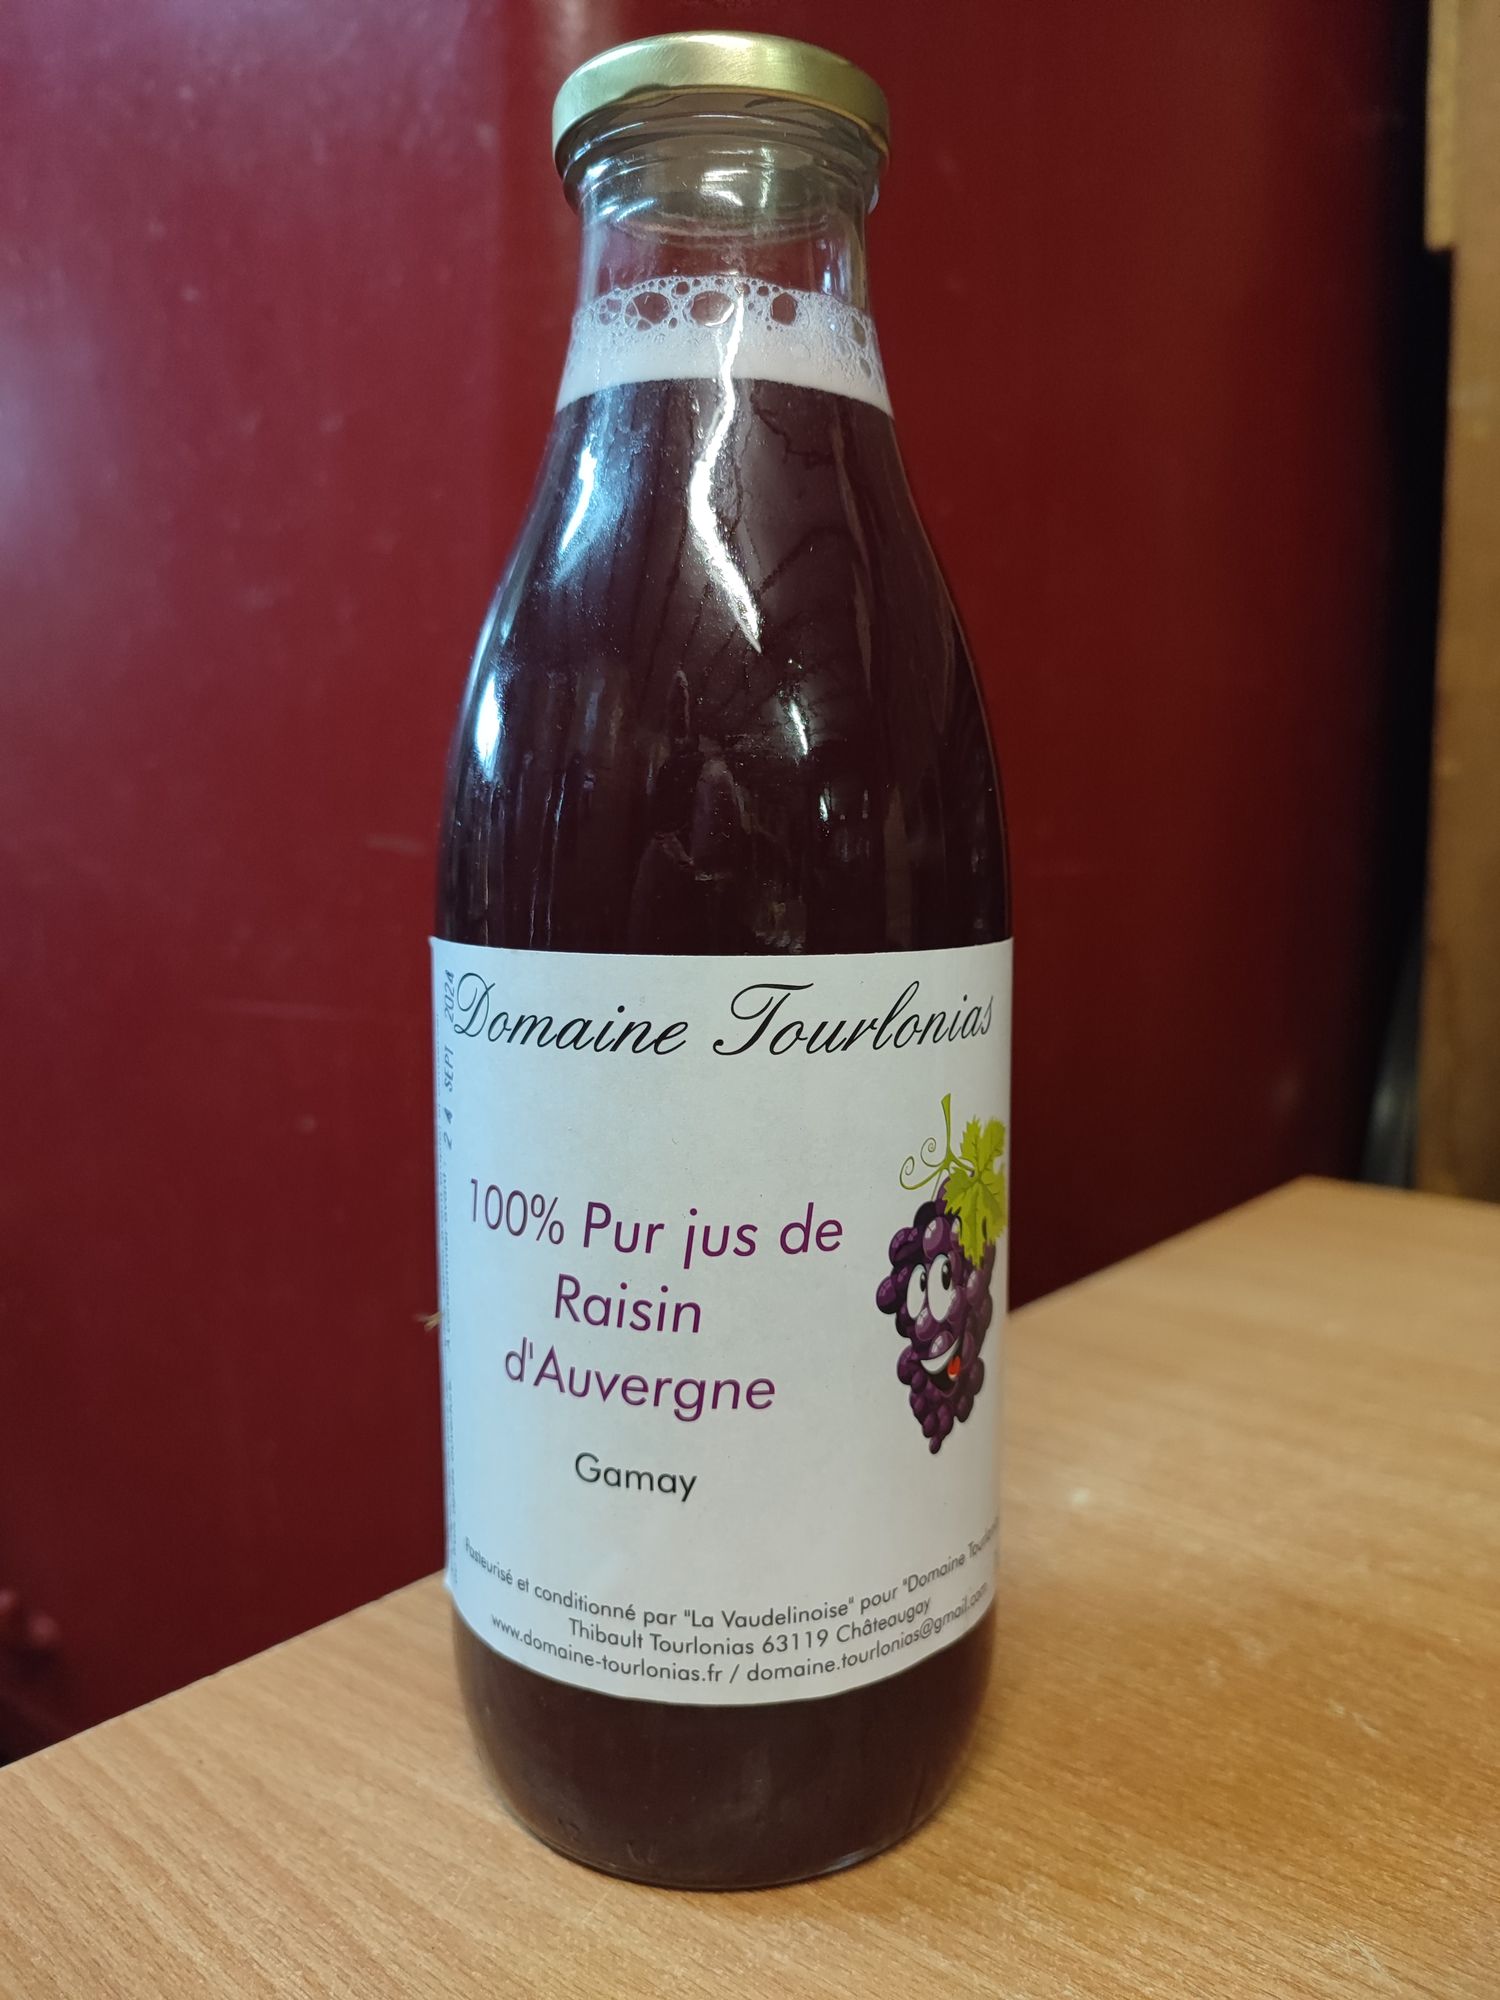 100% Pur jus de raisin d'Auvergne